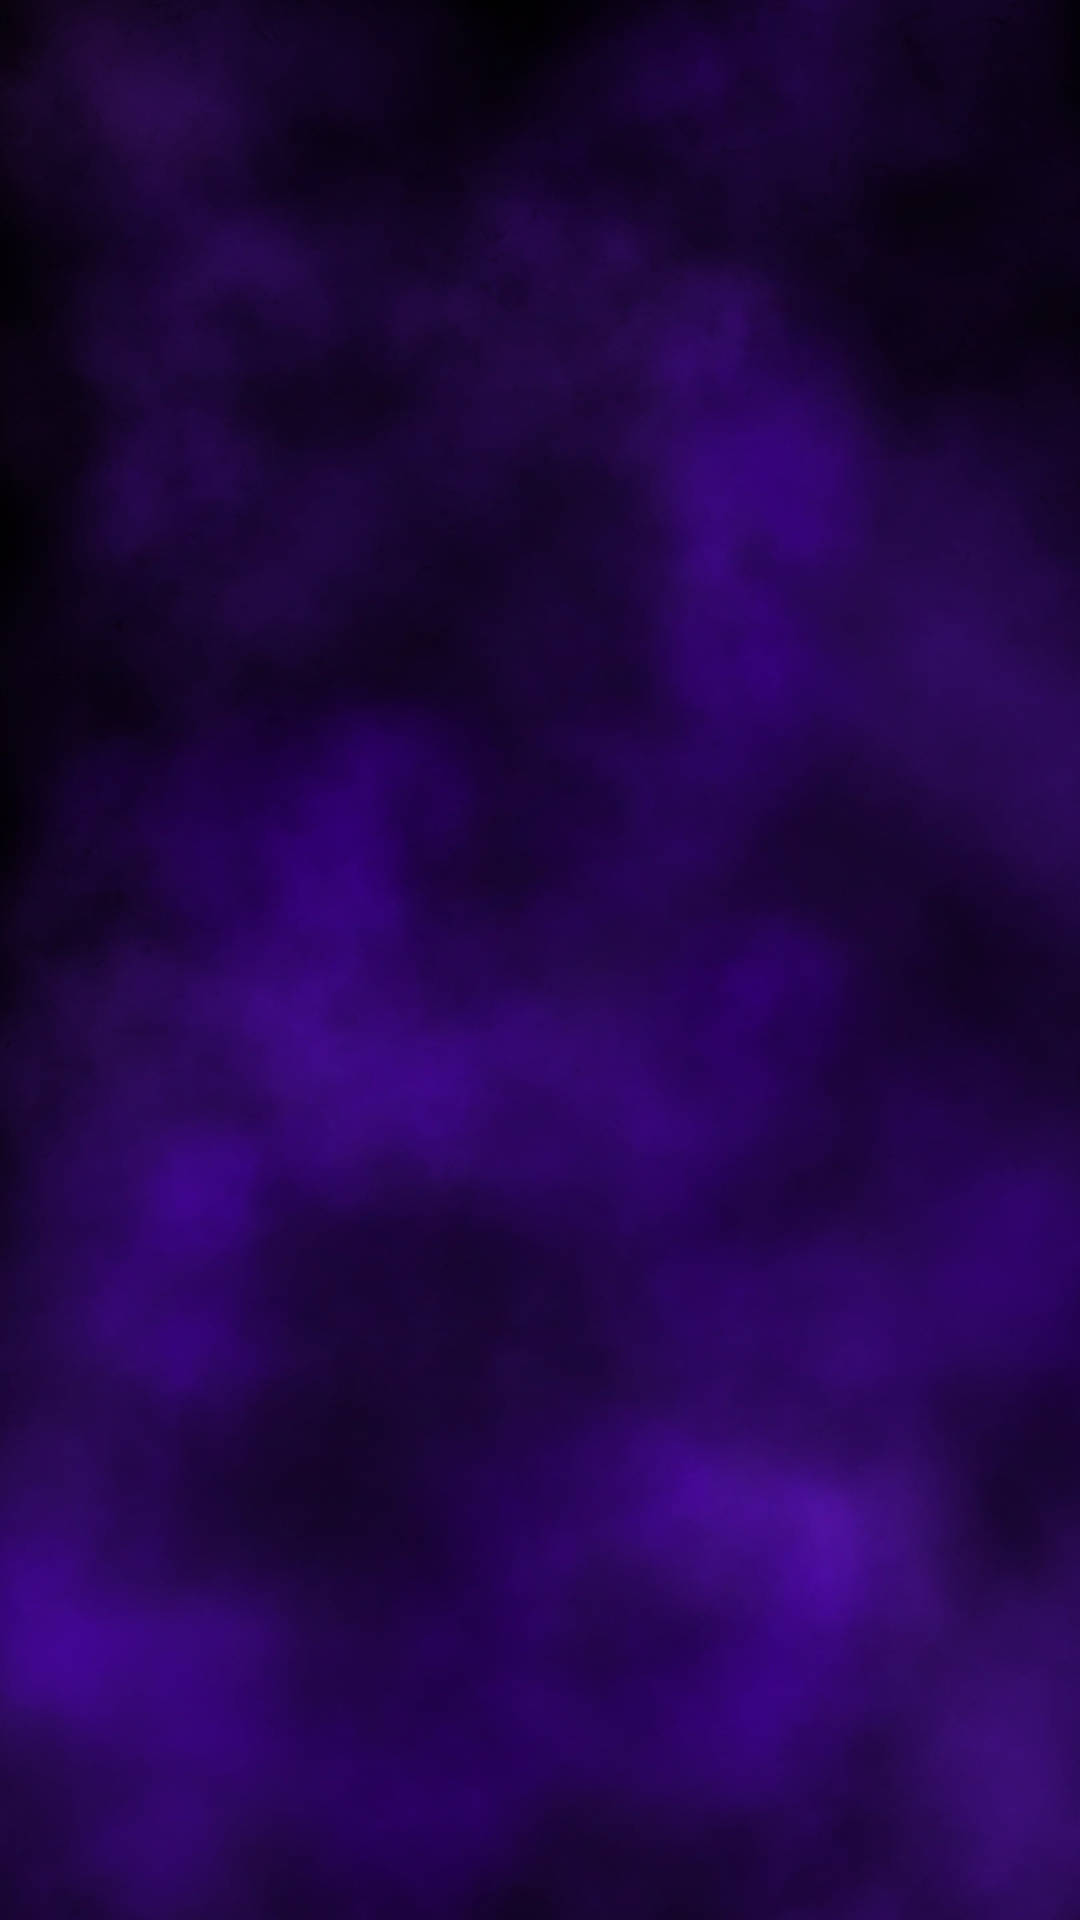 Simple Dark Purple Fog Background